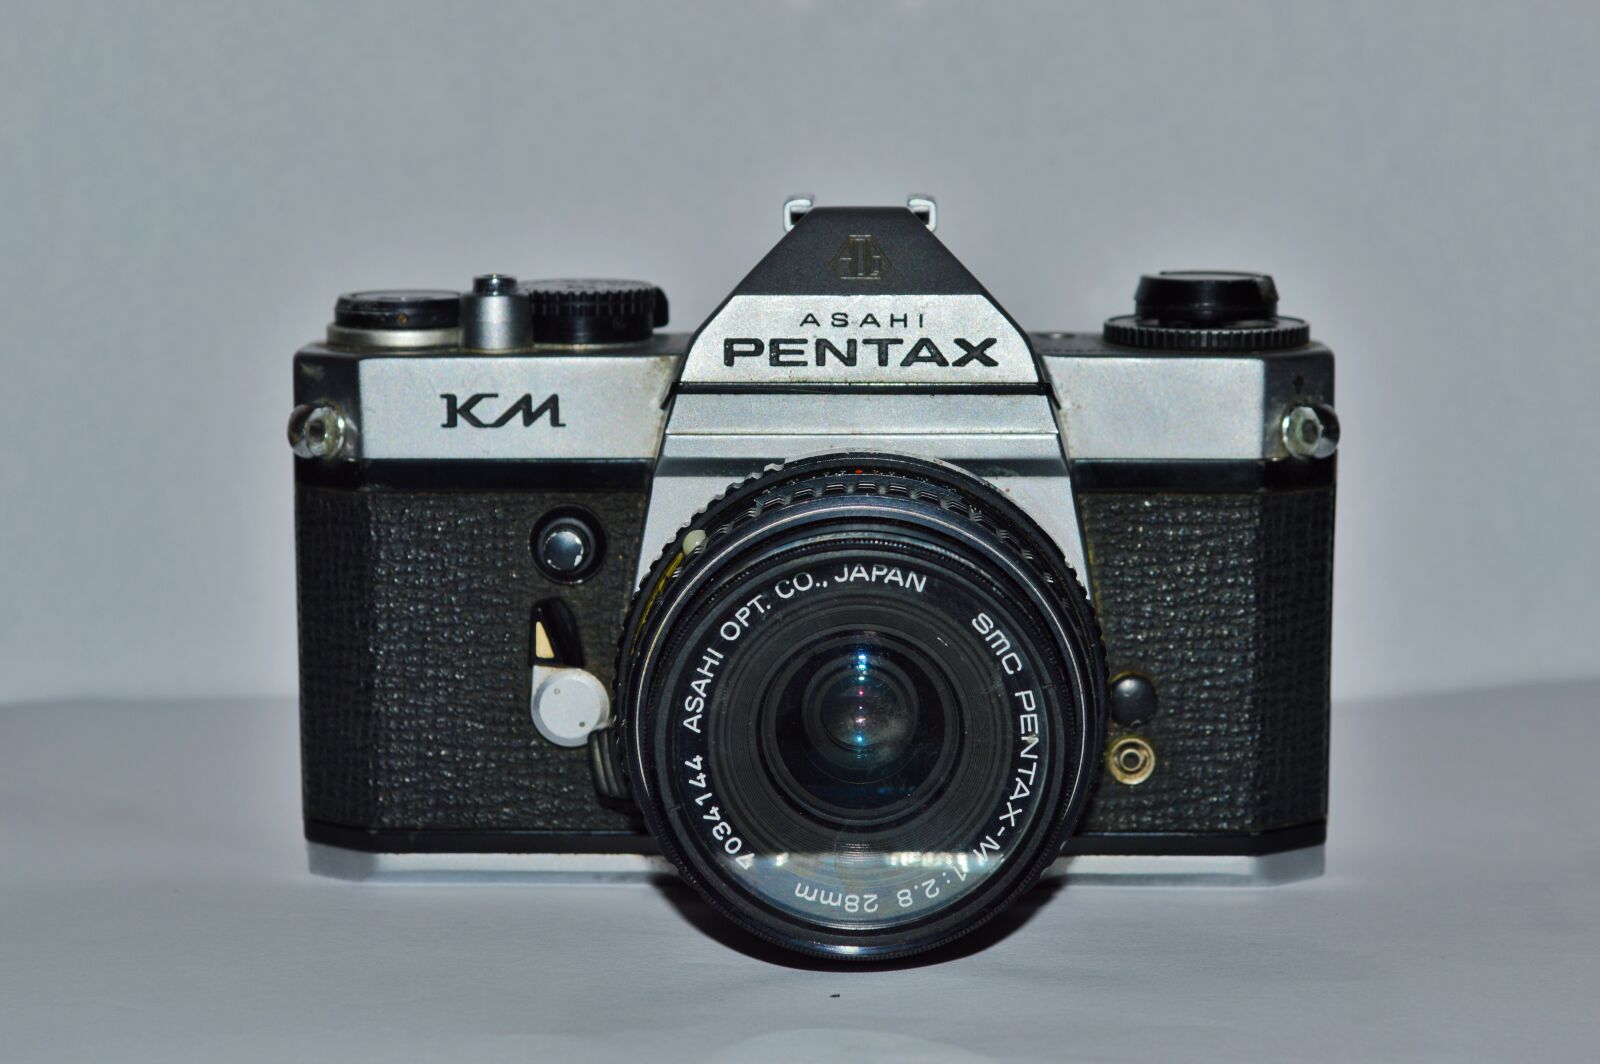 Nikon D3200 sample photo. Lens, antique, classic photography